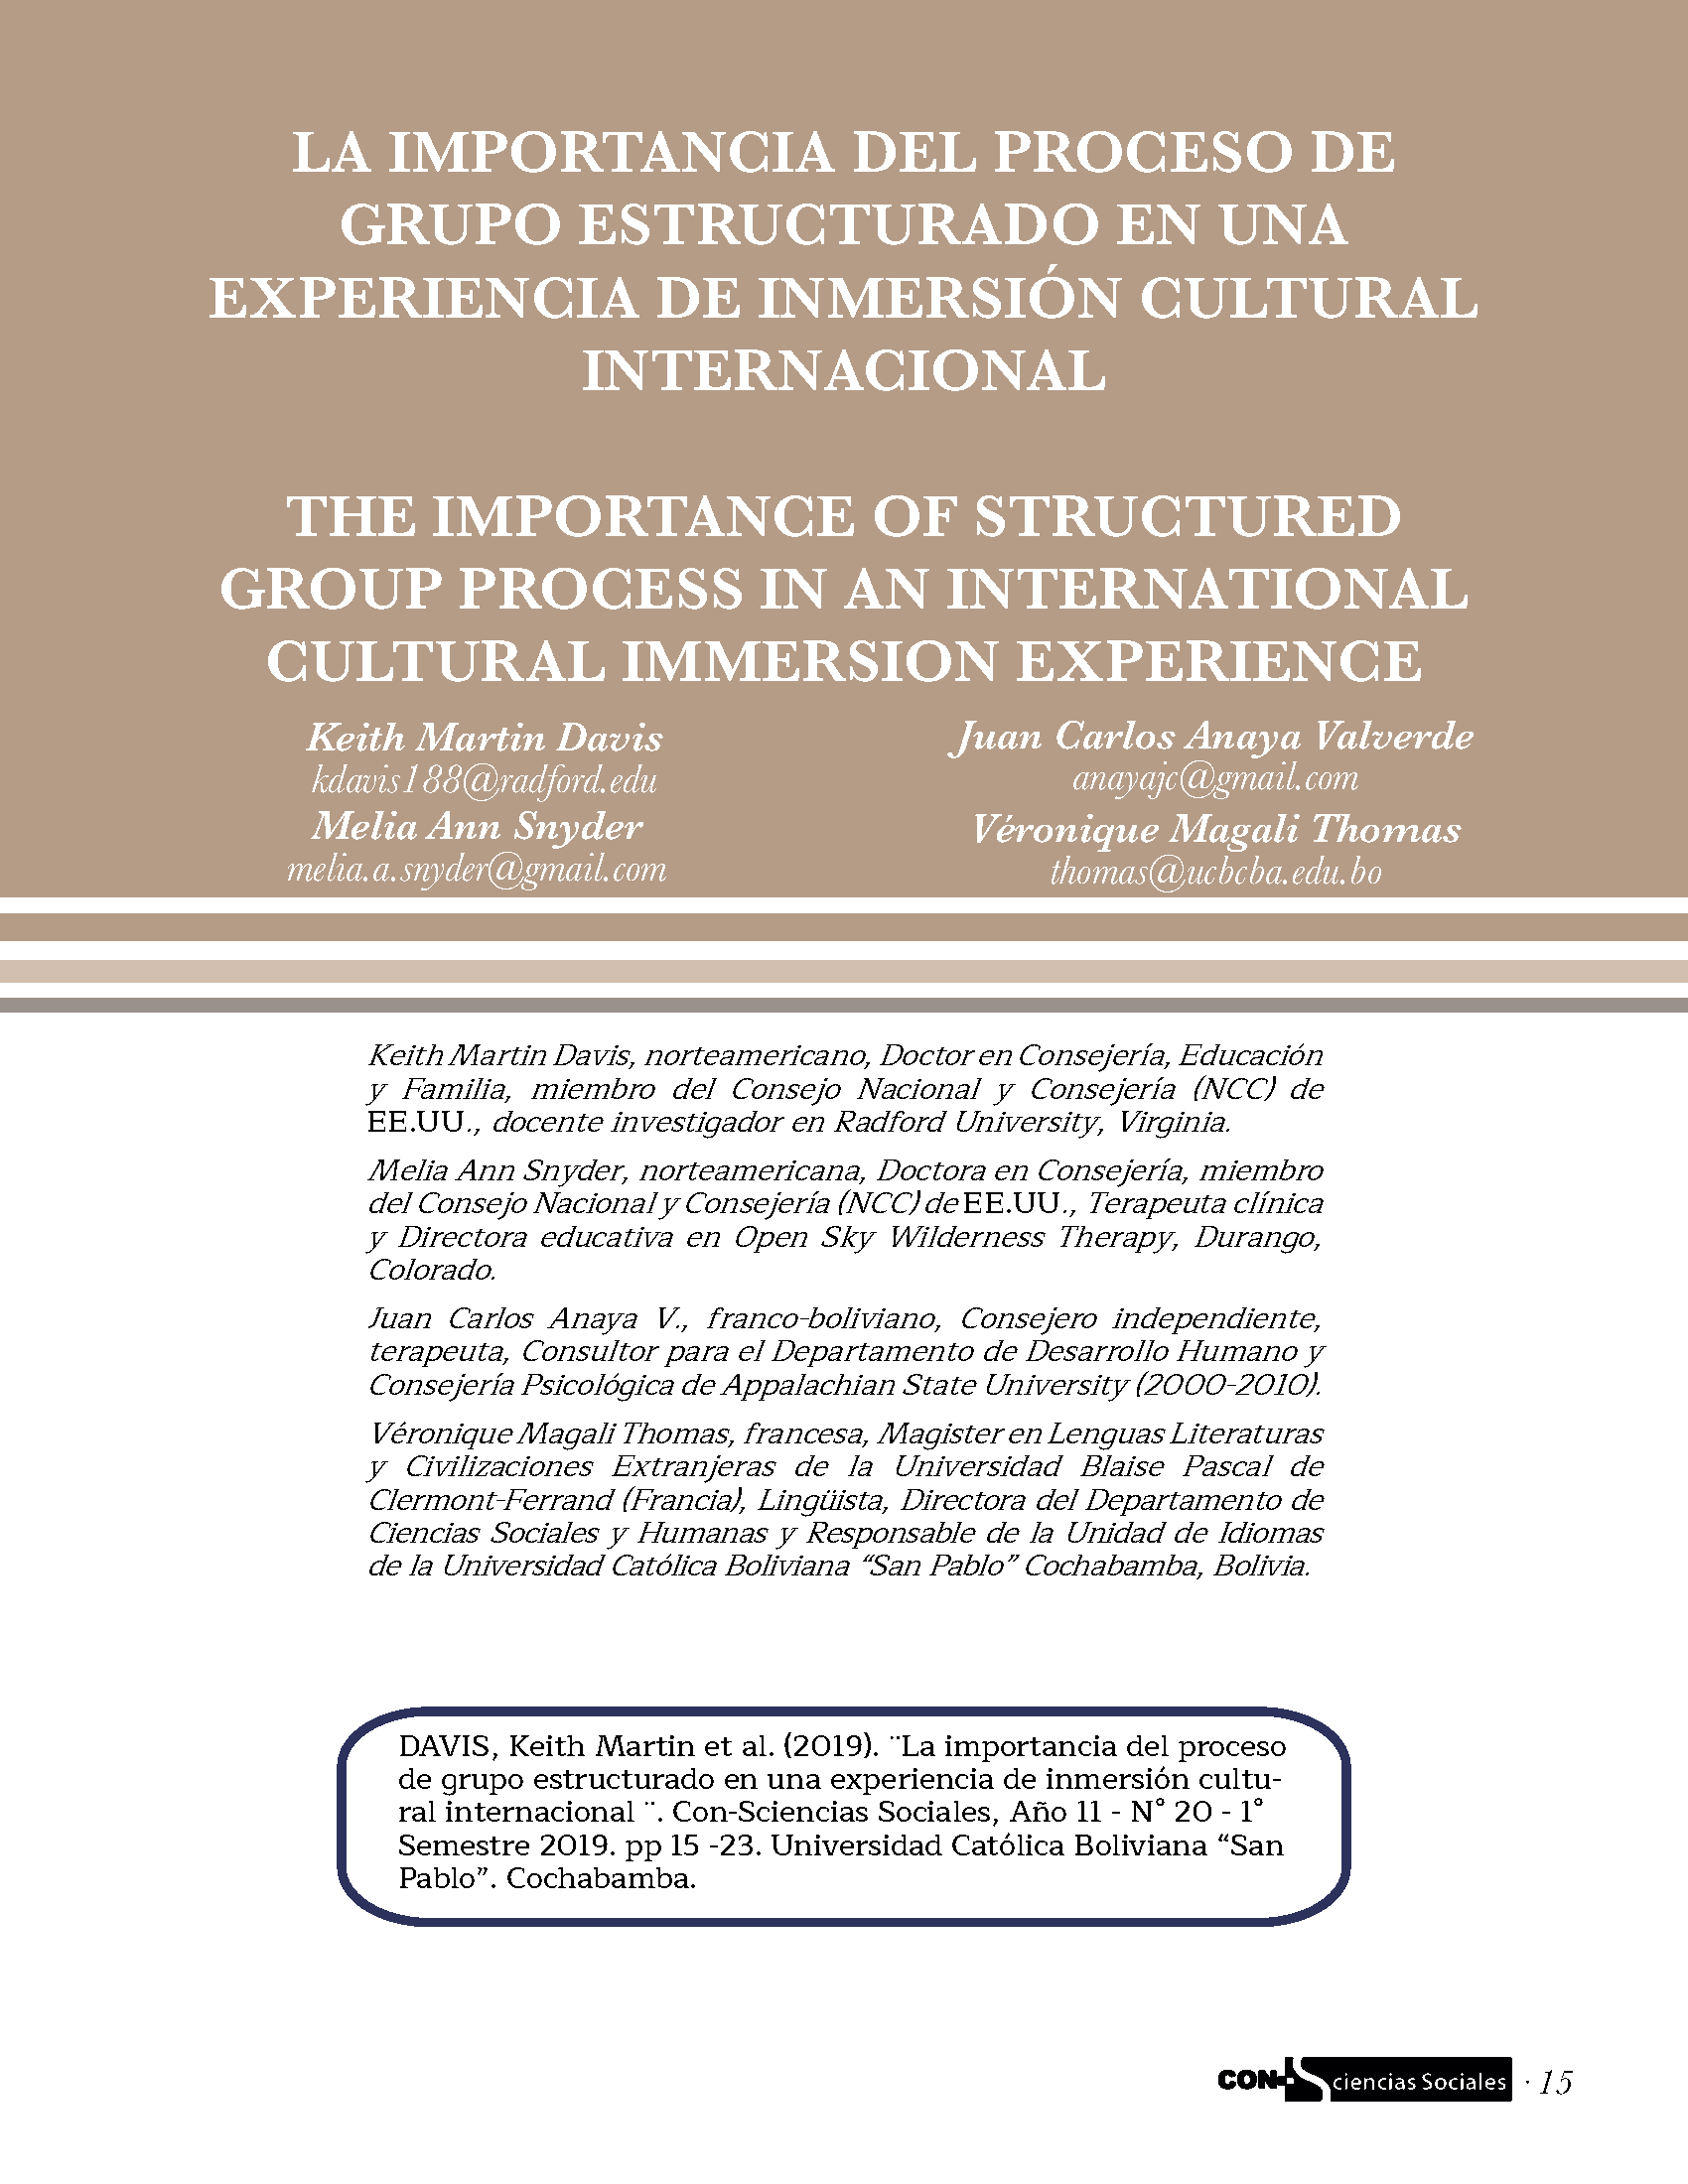 La importancia del proceso de grupo estructurado en una experiencia de inmersión cultural internacional